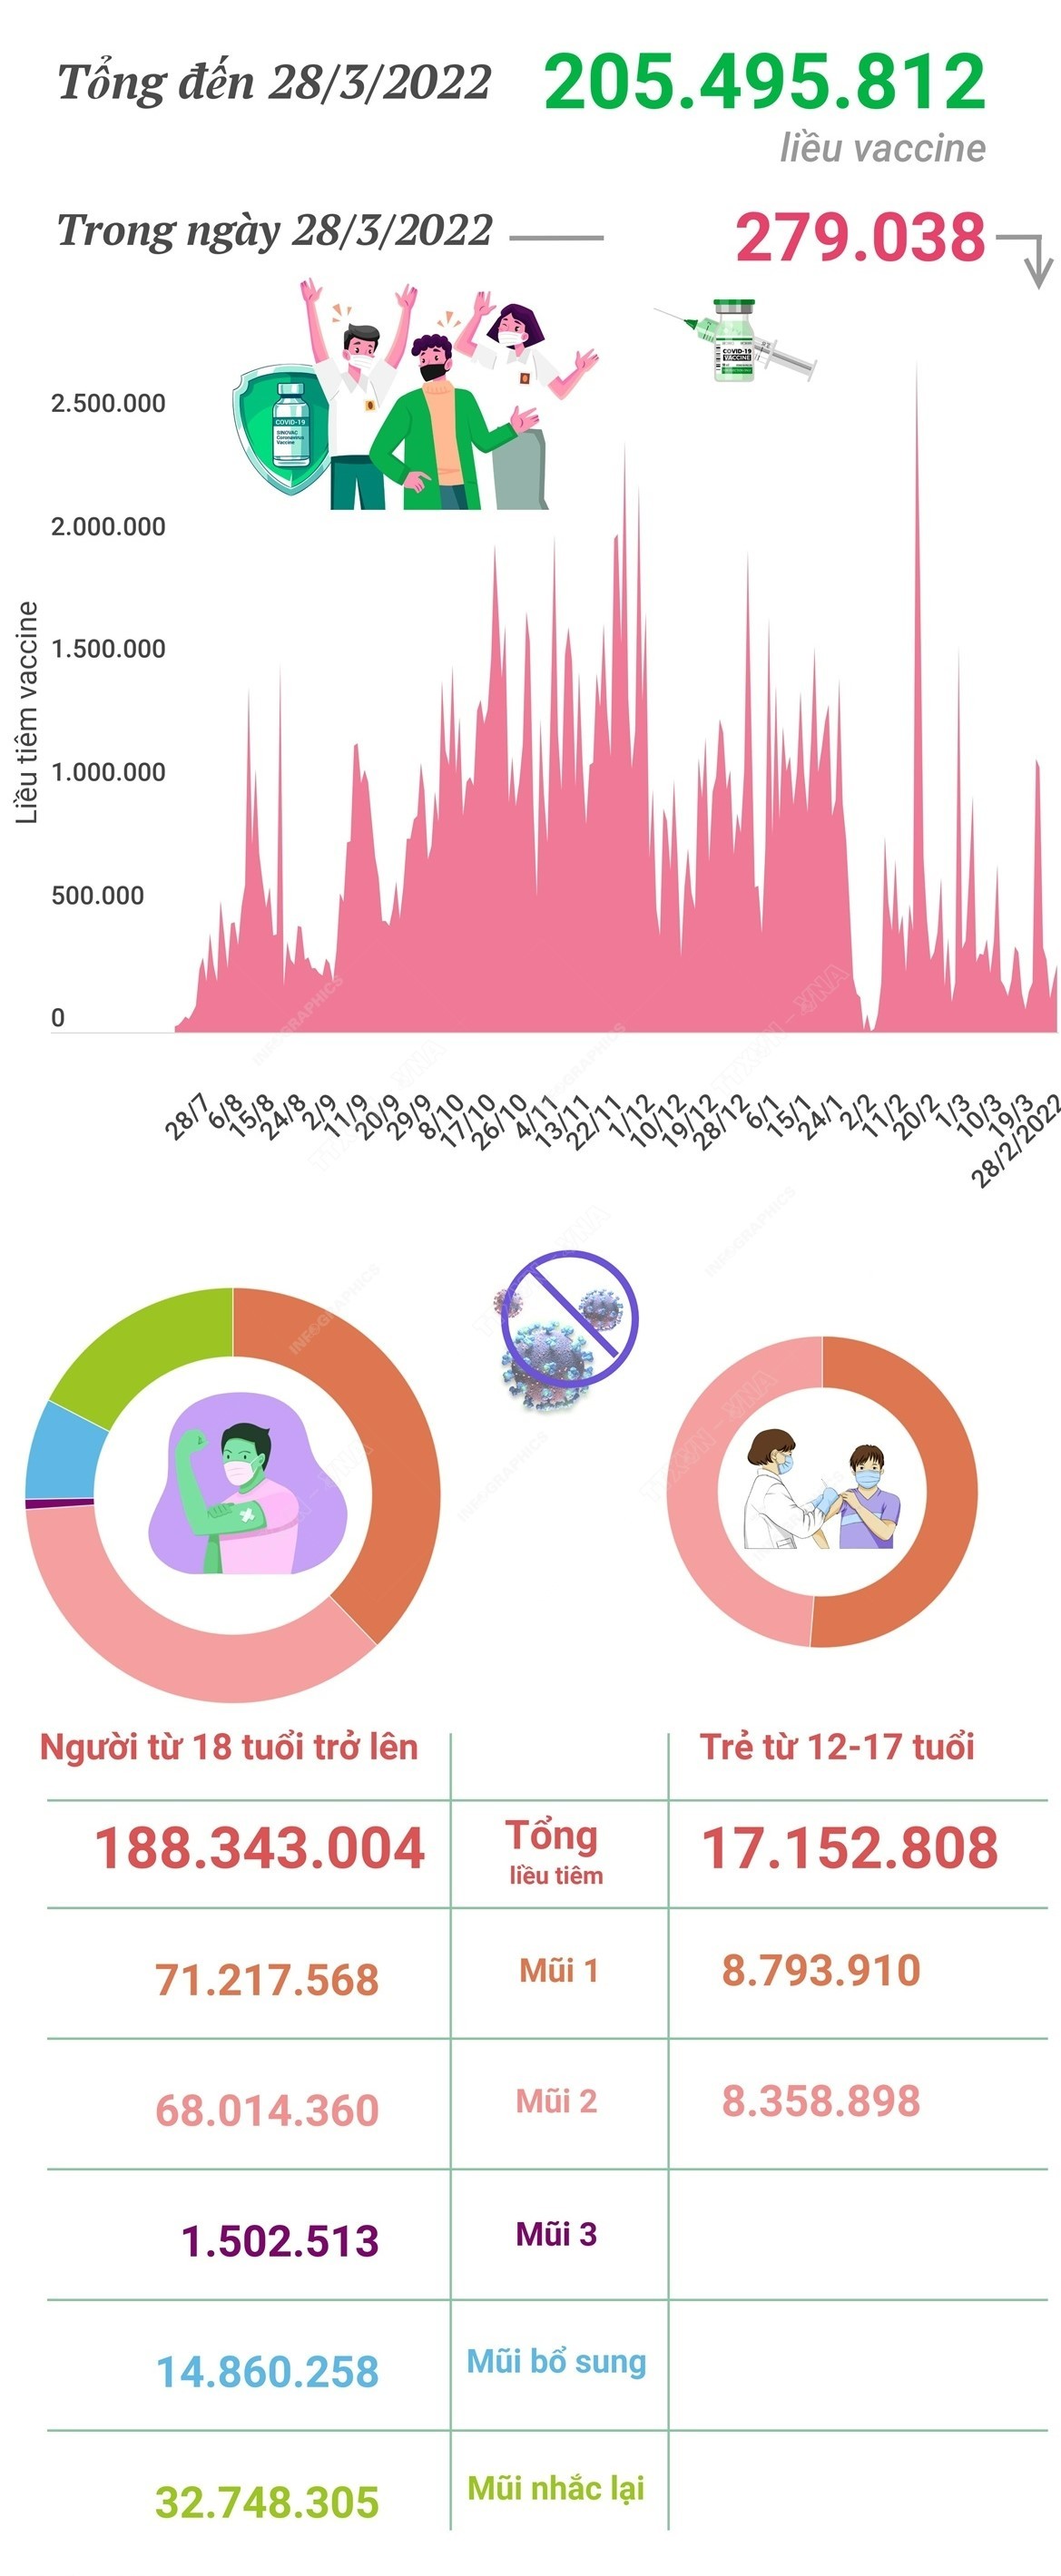 Hơn 205,49 triệu liều vaccine phòng COVID-19 đã được tiêm tại Việt Nam